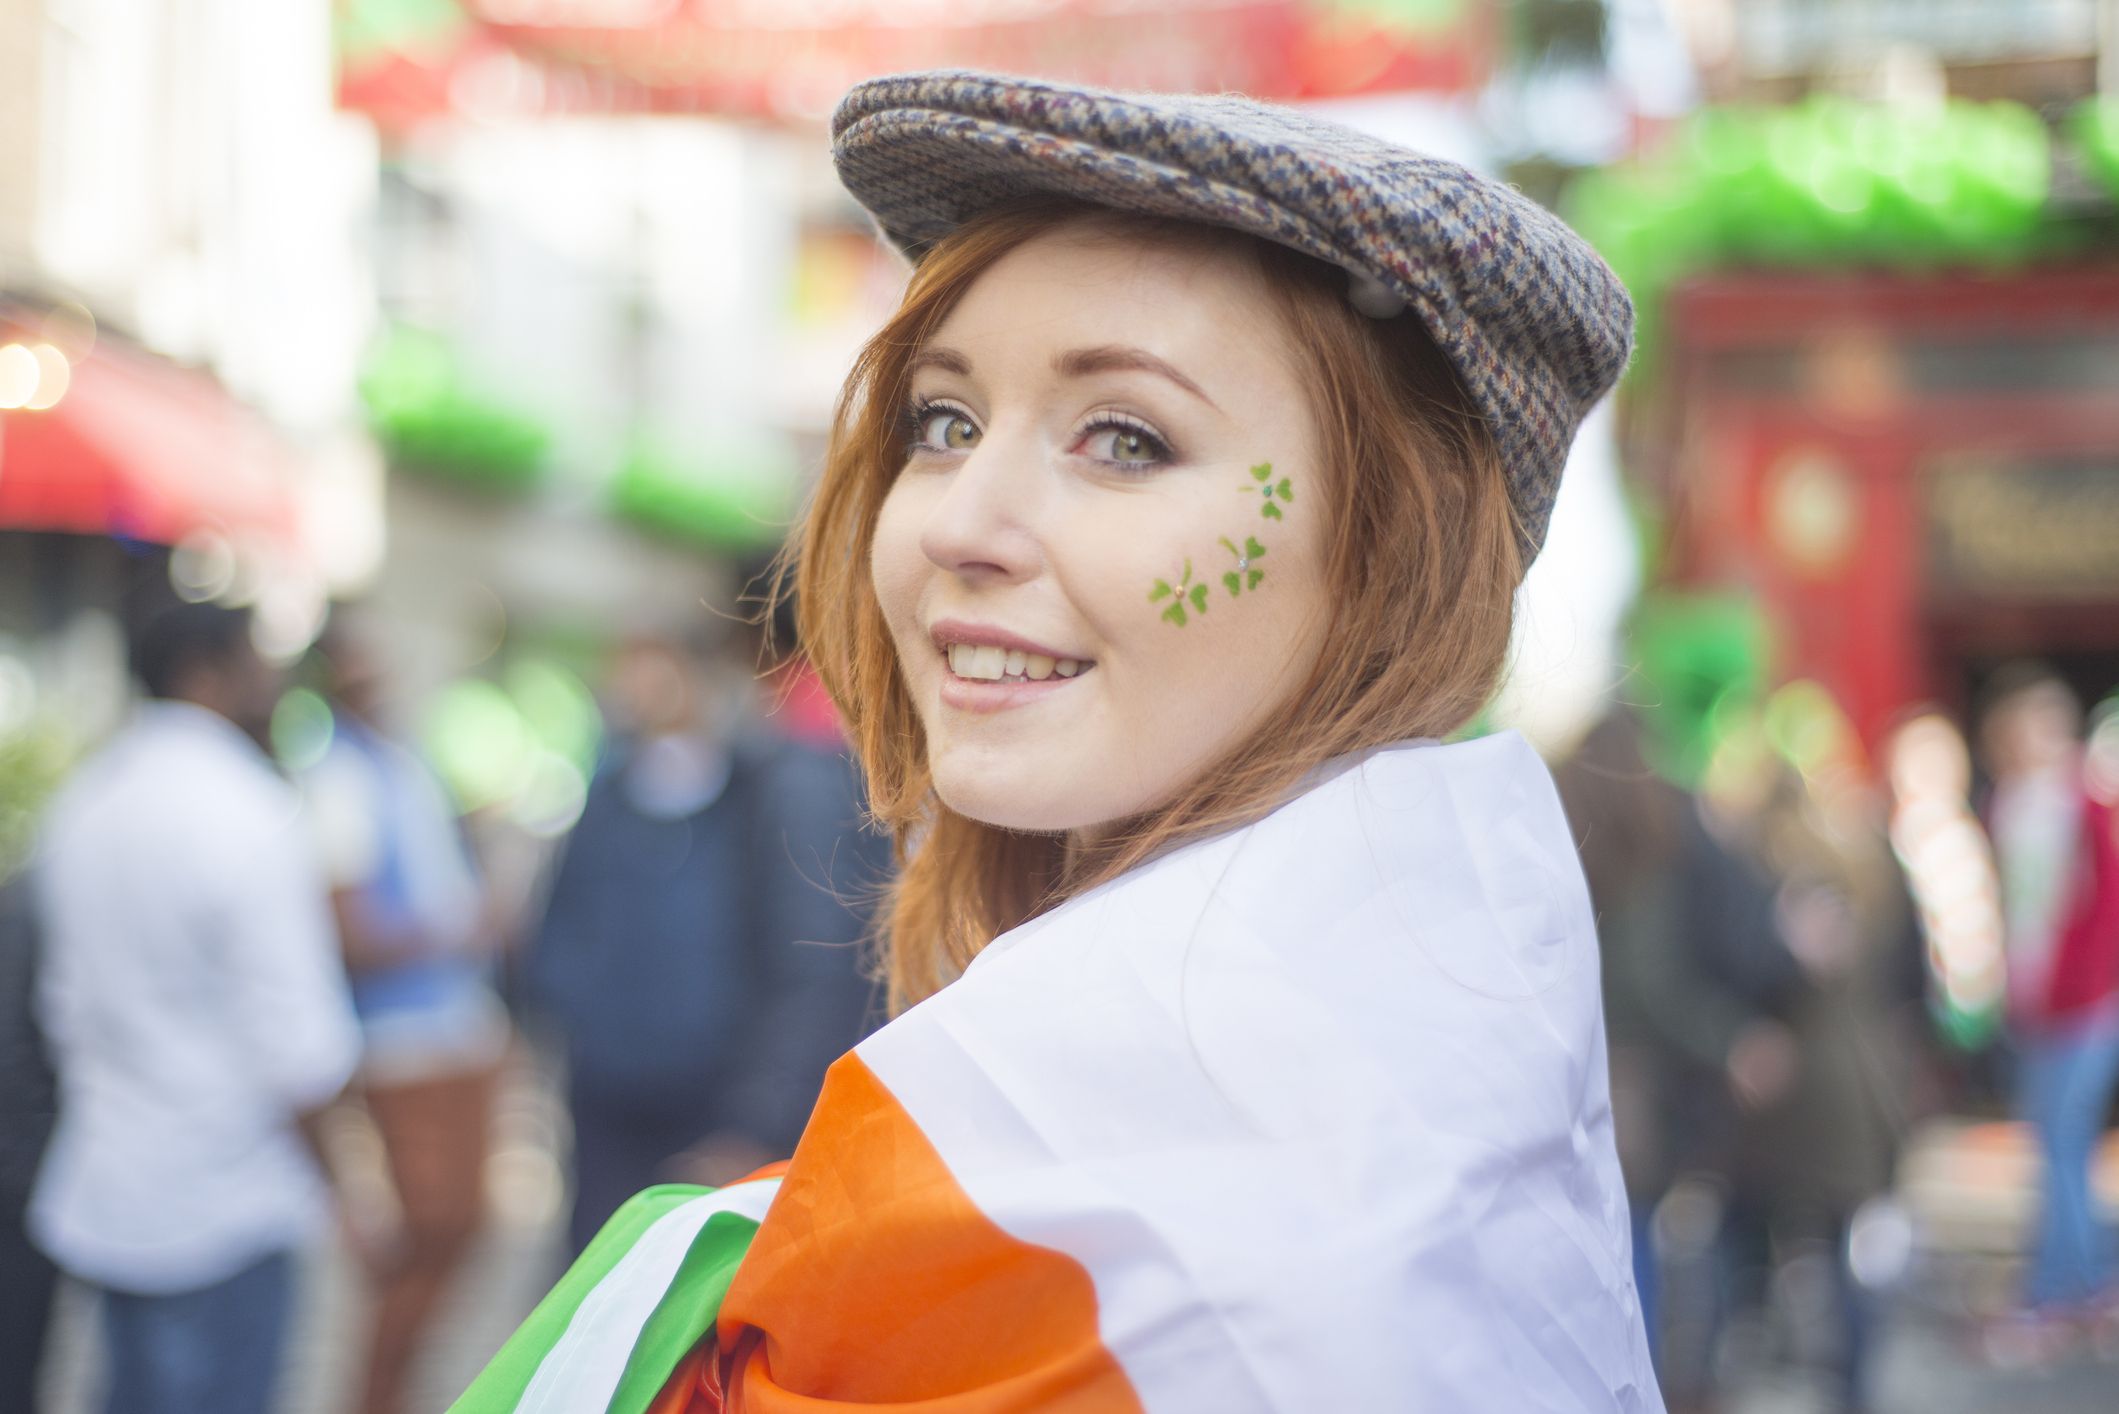 100 Best St. Patrick's Day Quotes: Irish Sayings, Irish Blessings